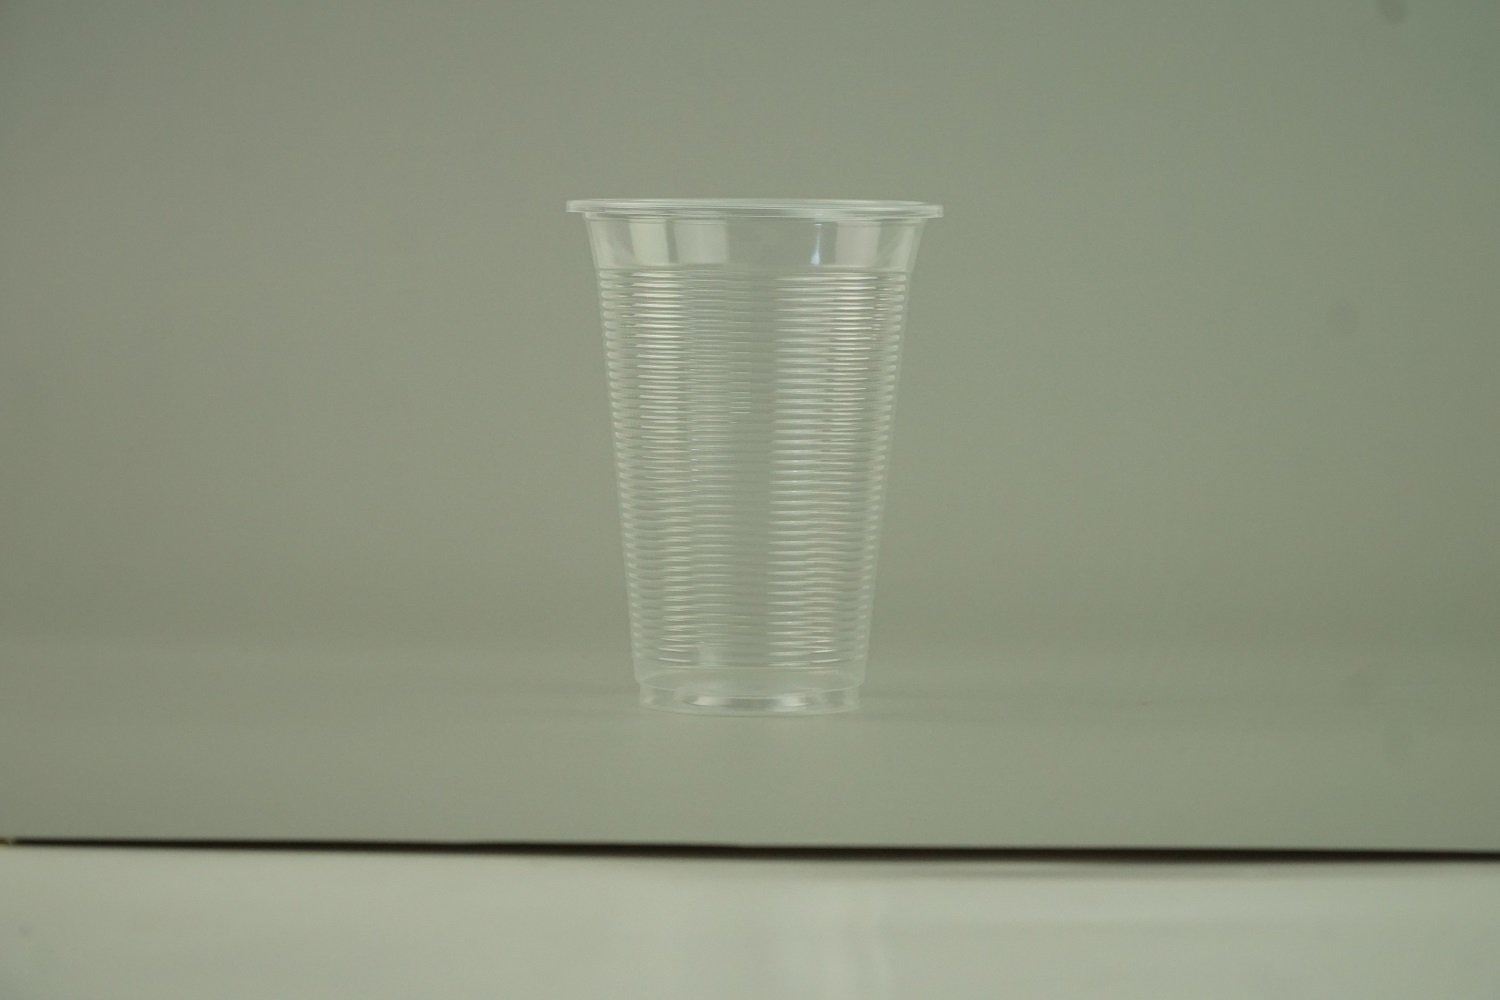 แก้วน้ำ 16 ออนซ์ แก้วพลาสติก PP ลอนใส รุ่นพิเศษ ปาก95mm. ขนาด 9.5x12x6 cm.